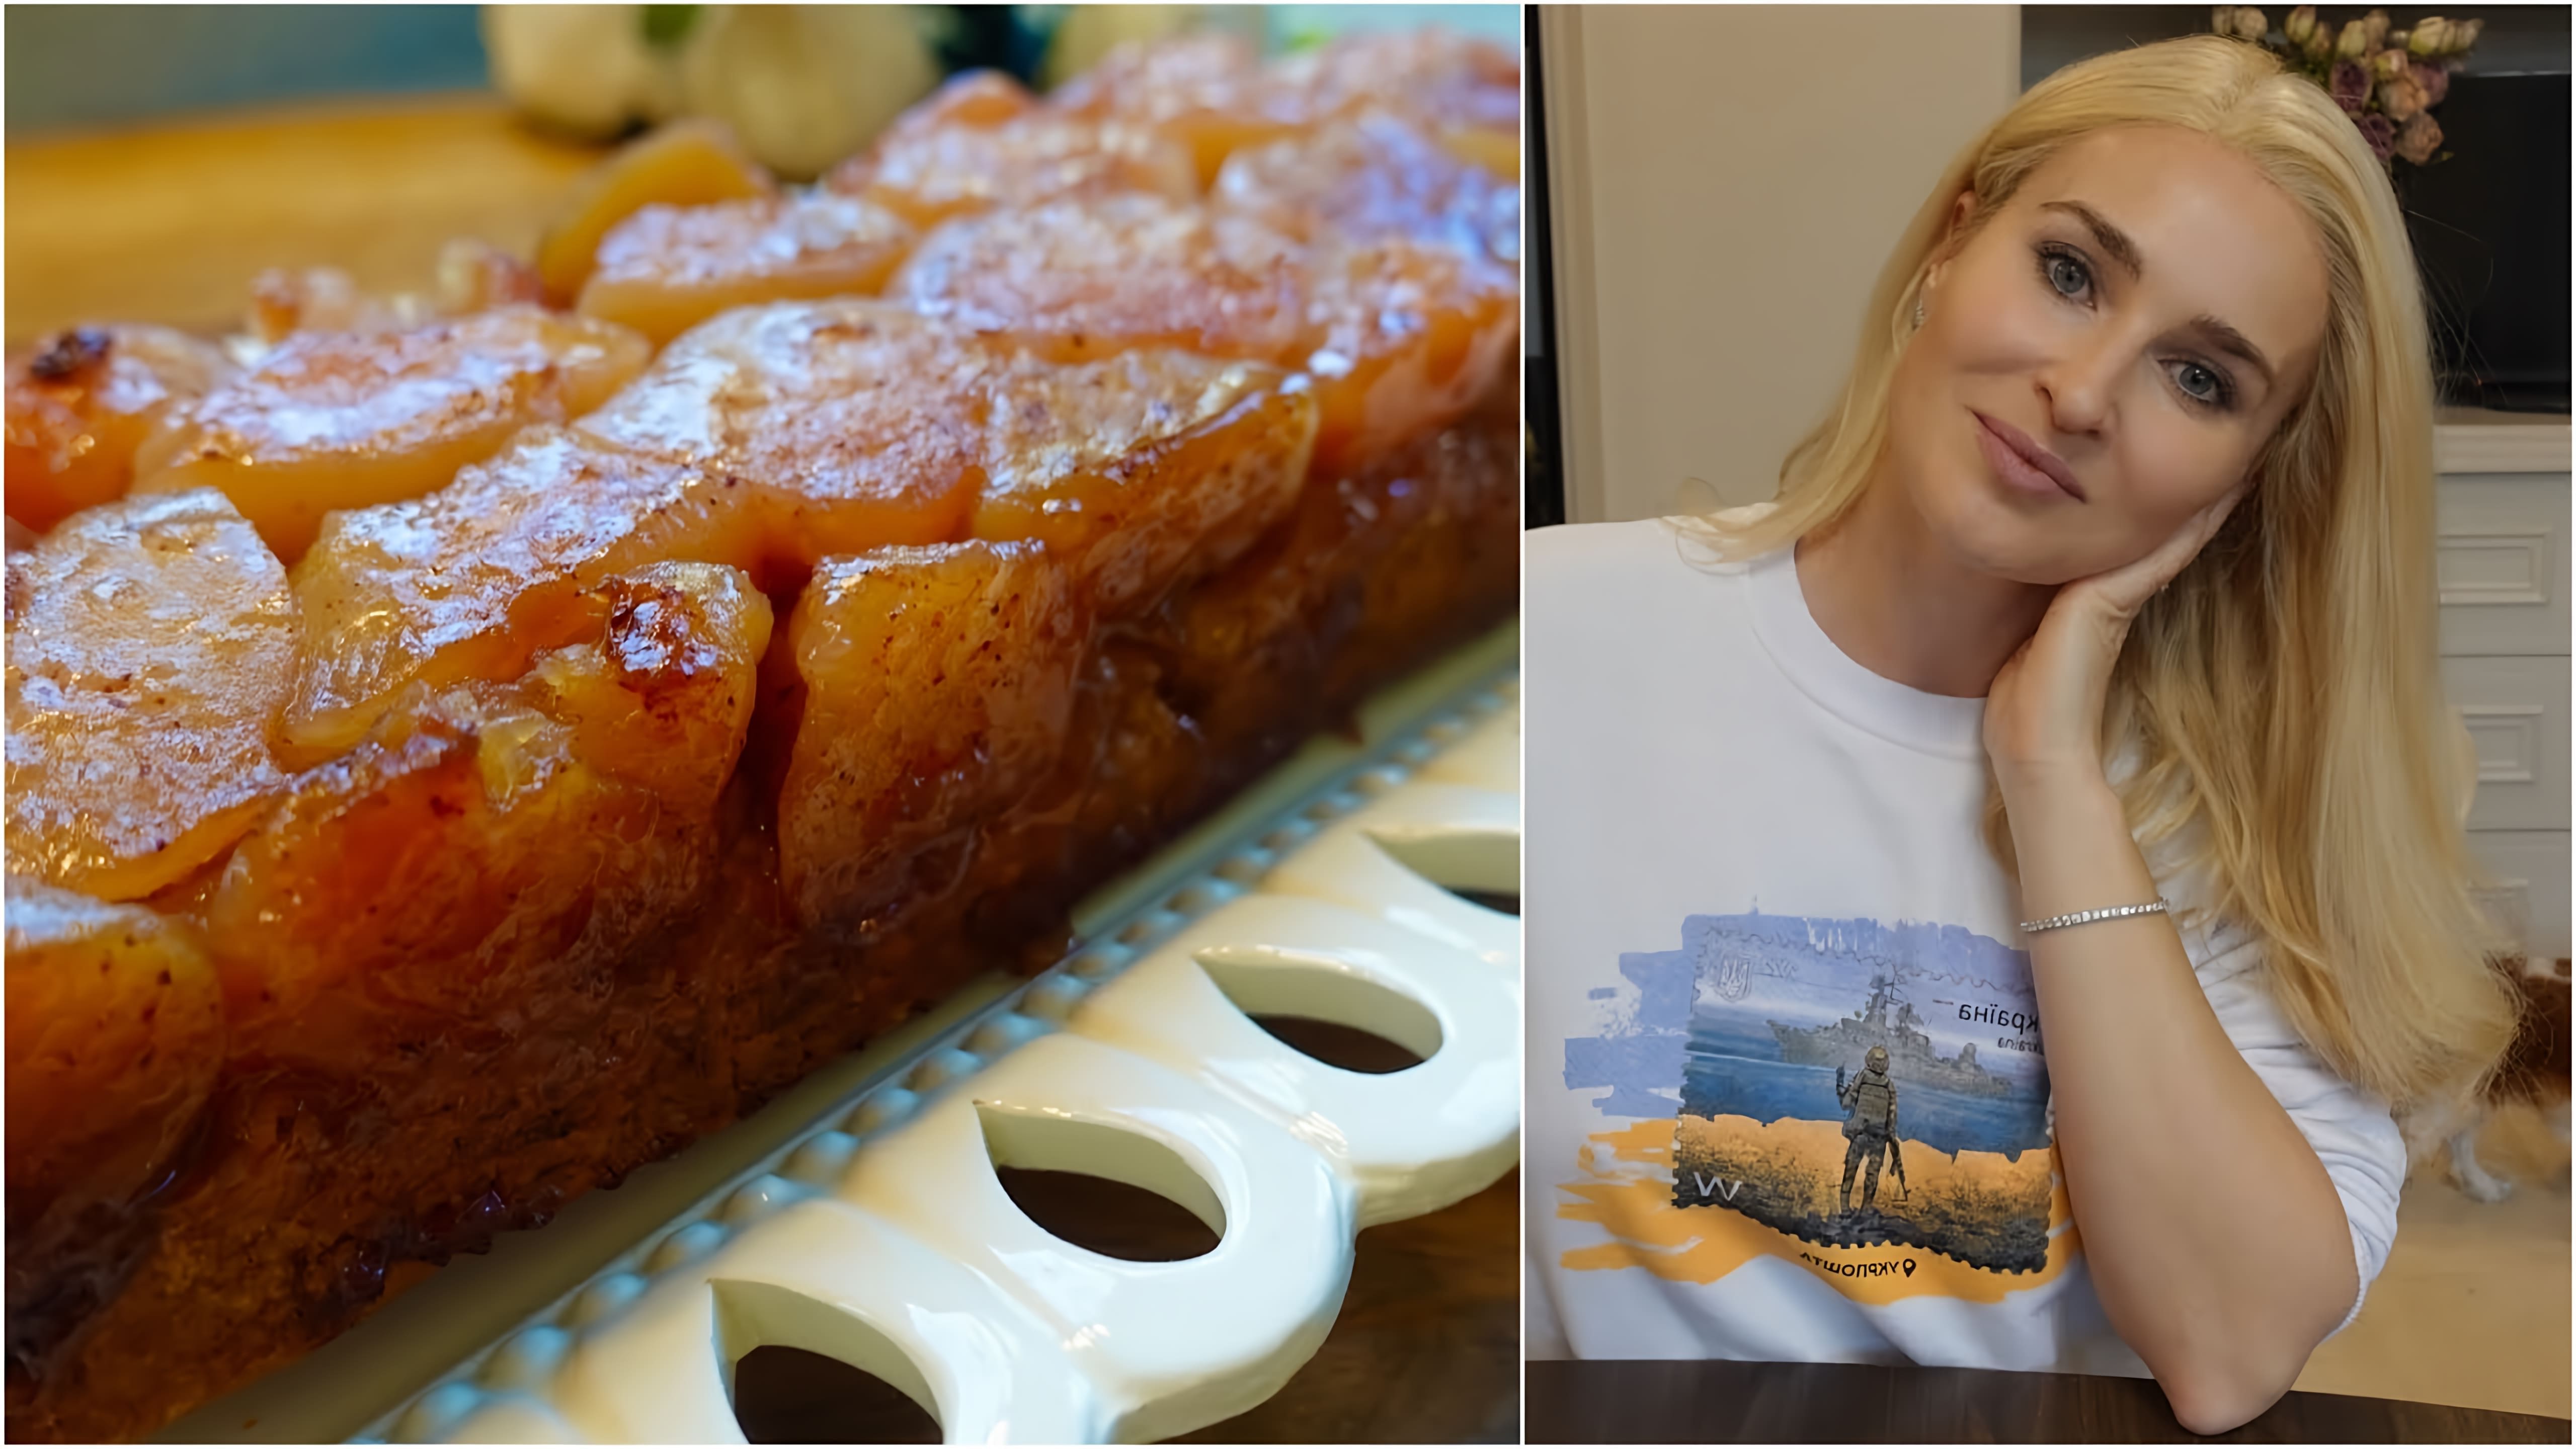 В этом видео демонстрируется рецепт приготовления перевернутого французского пирога с яблоками, который называется Тарт ТАТЕН